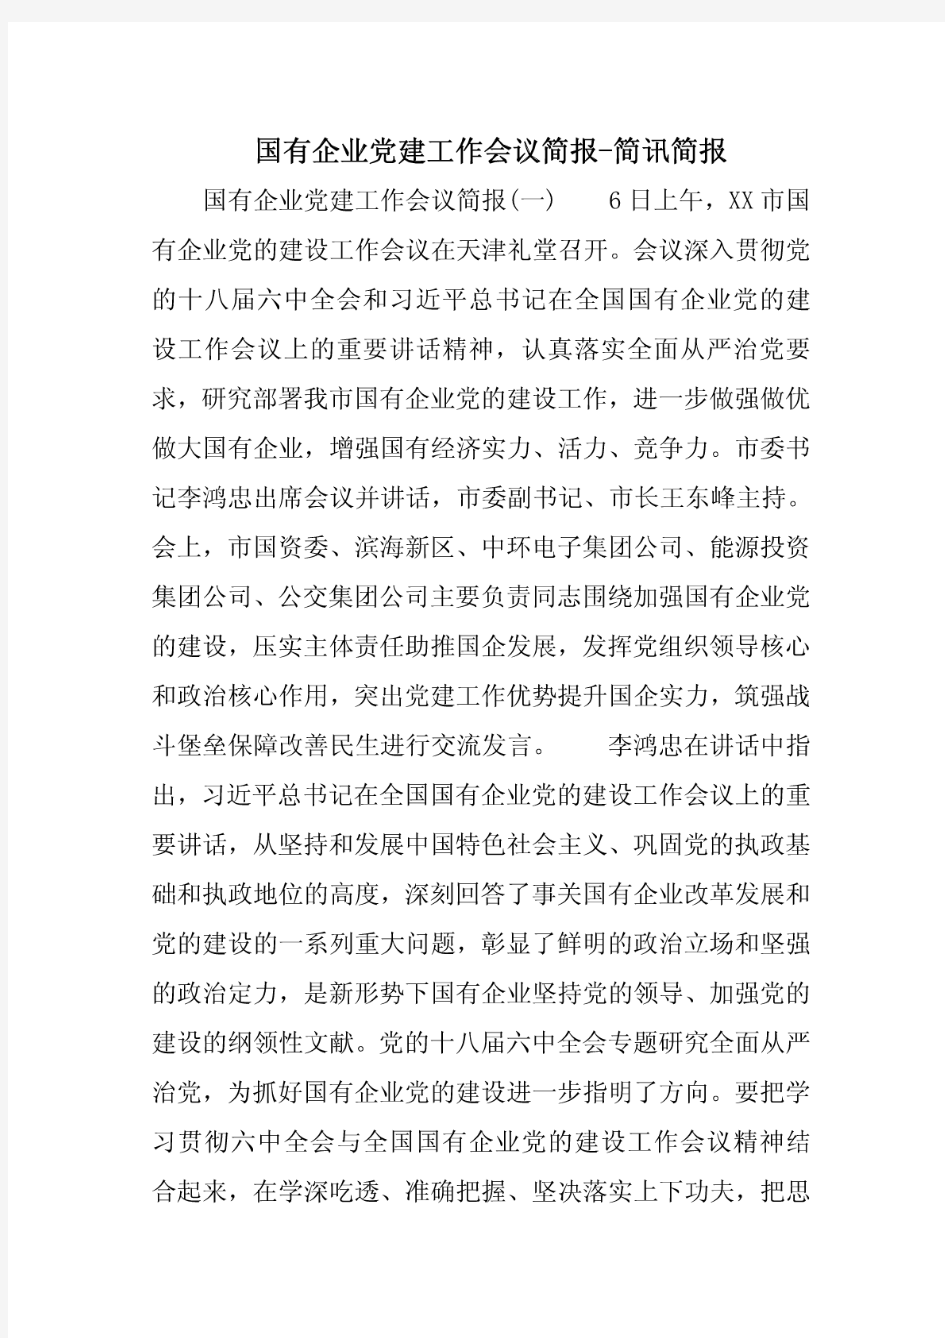 国有企业党建工作会议简报-简讯简报